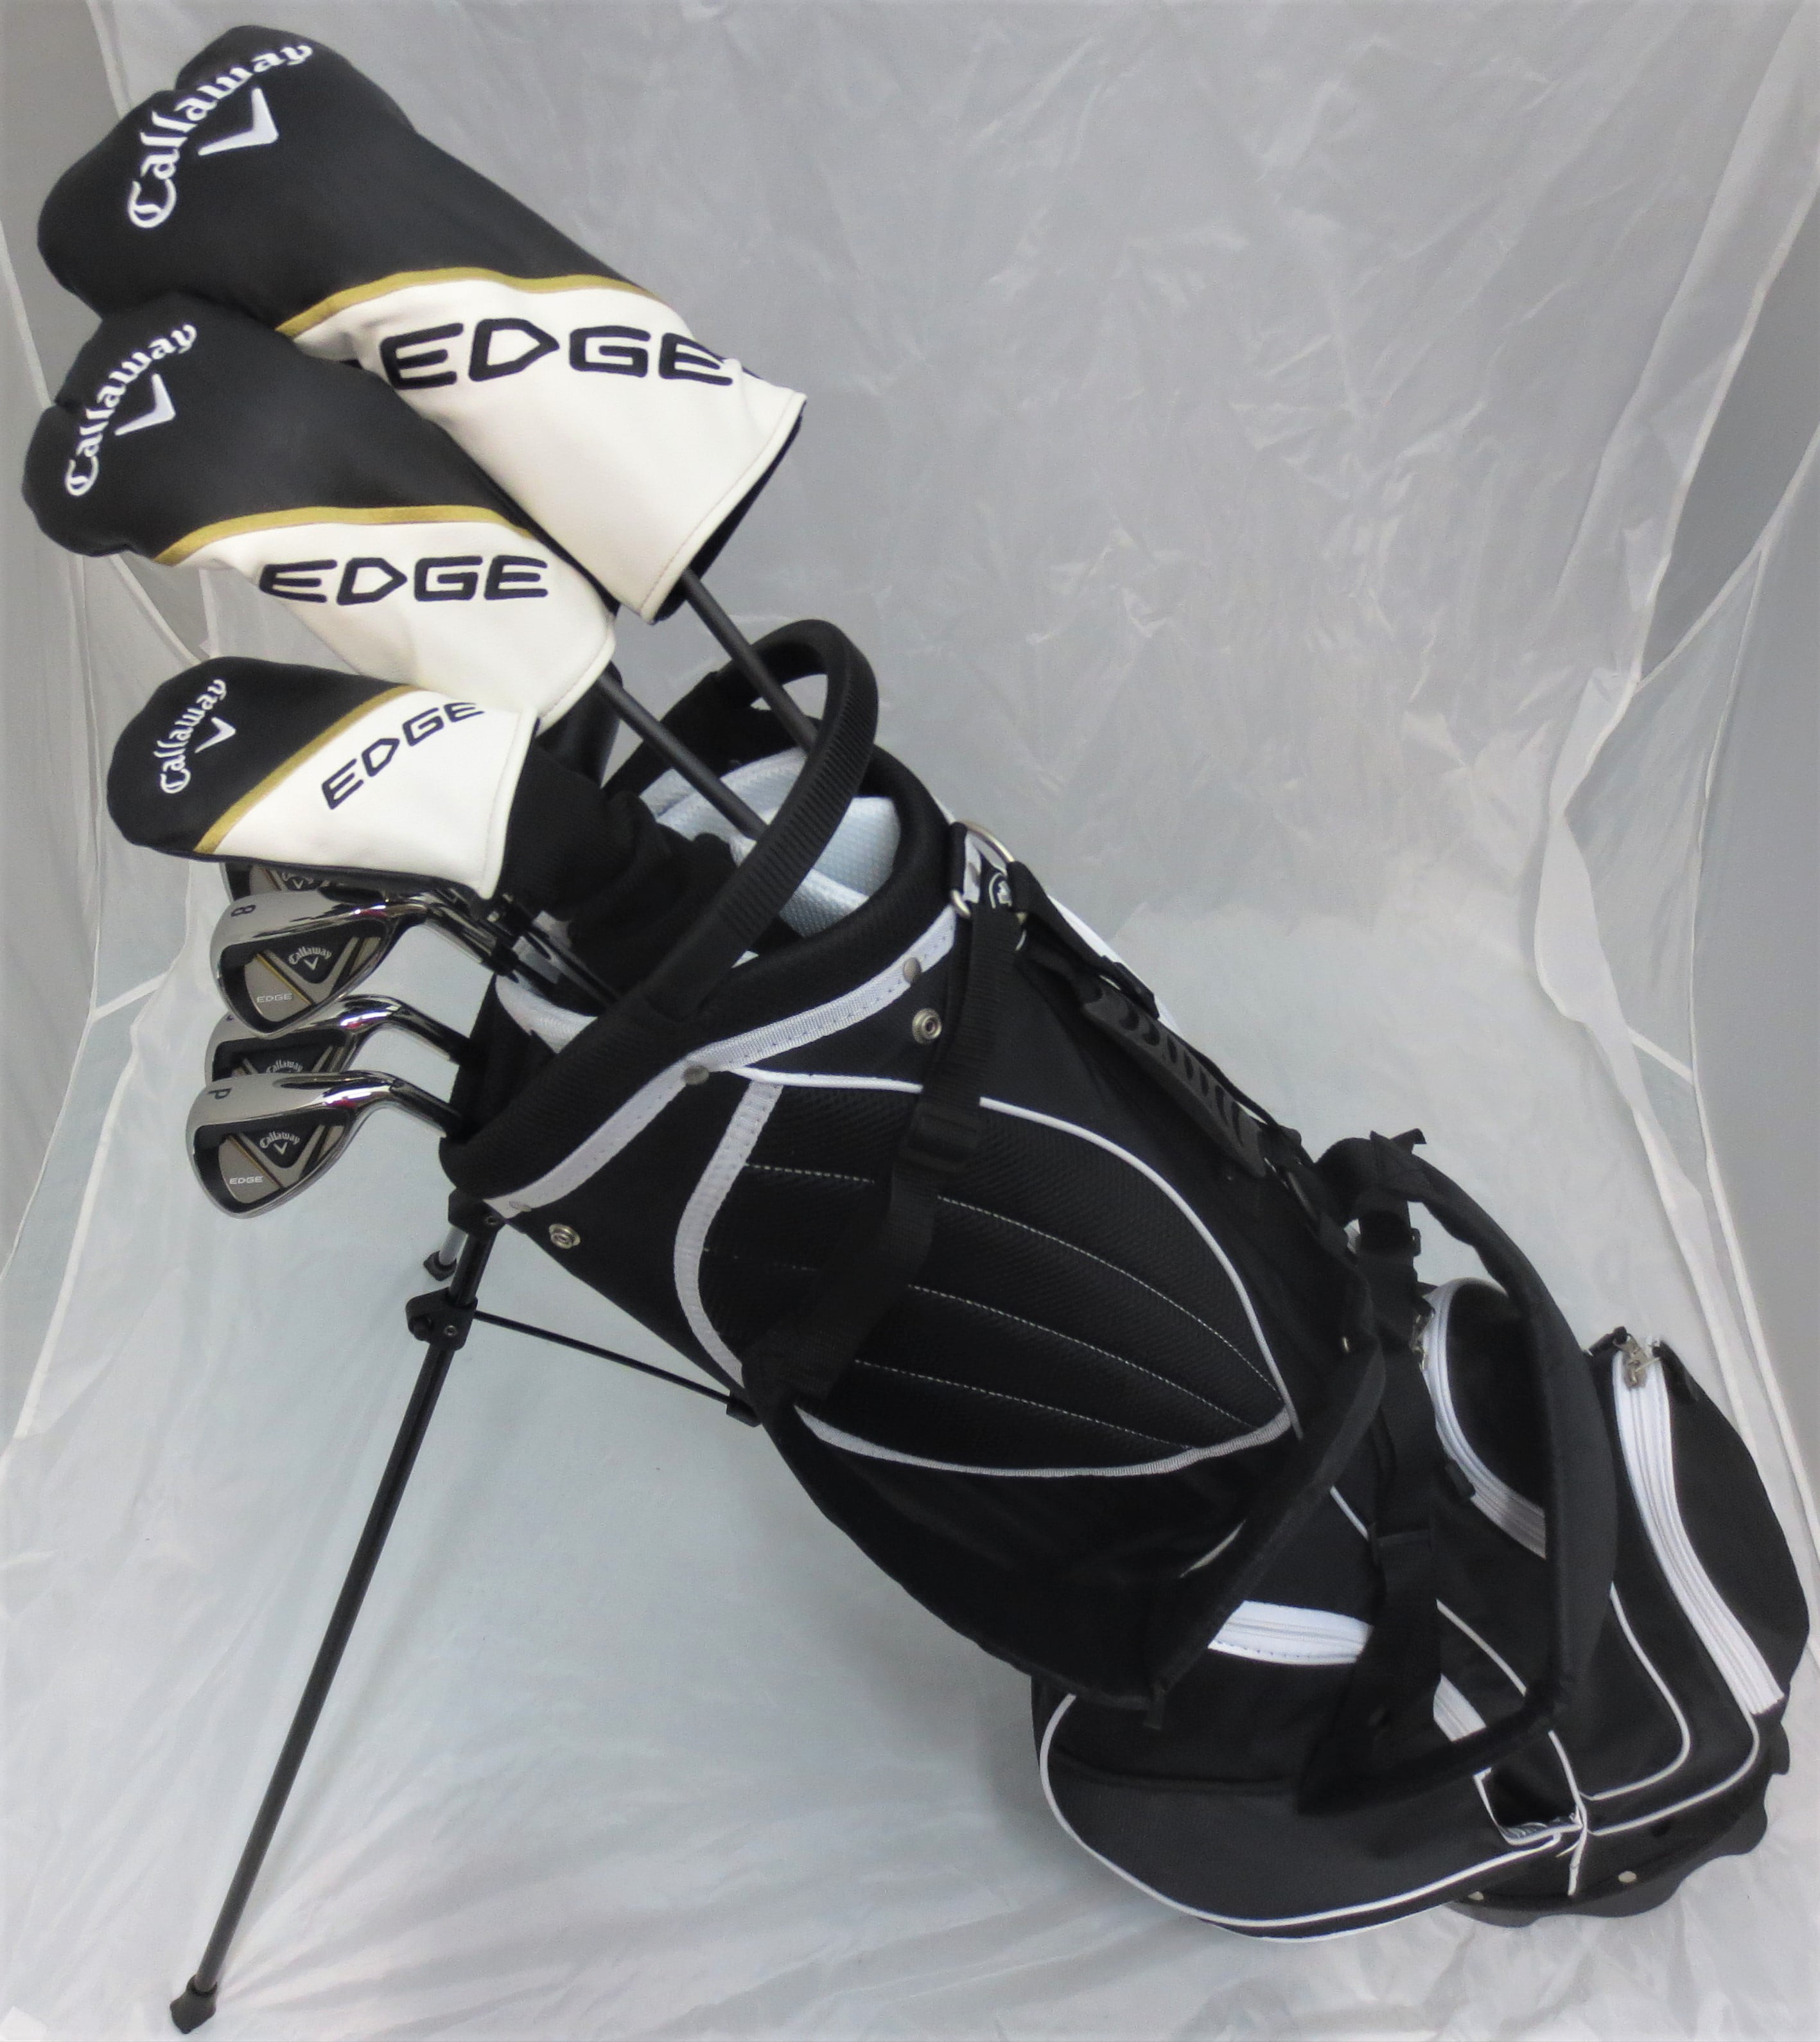 Powerbilt Men's Golf EX-550 Hybrid Iron Set, which Includes: #4, 5 